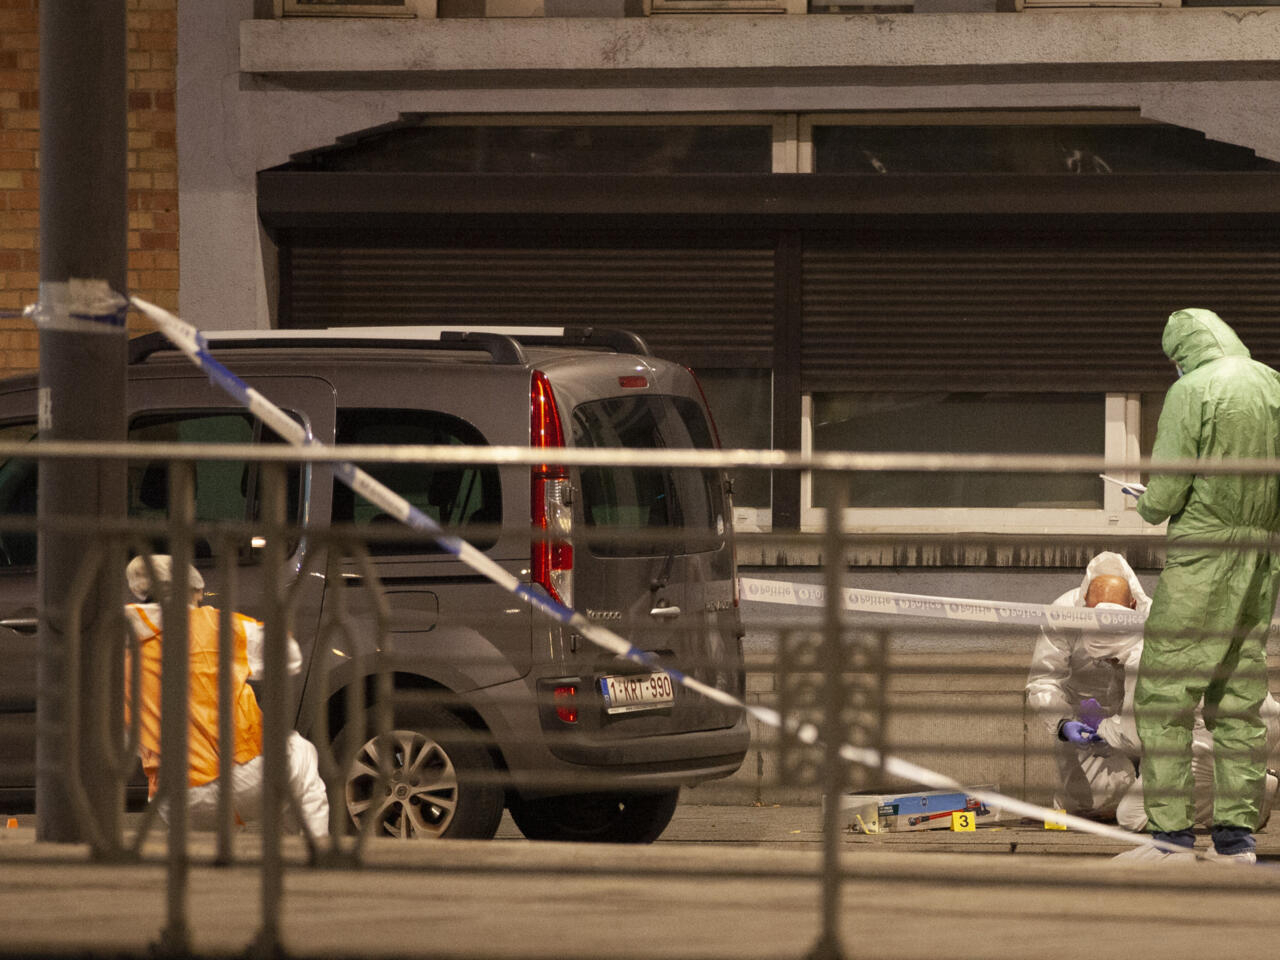 تفاصيل جديدة عن منفذ هجوم بروكسل تكشف عن تقصير سلطات بلجيكية واستقالة وزير العدل